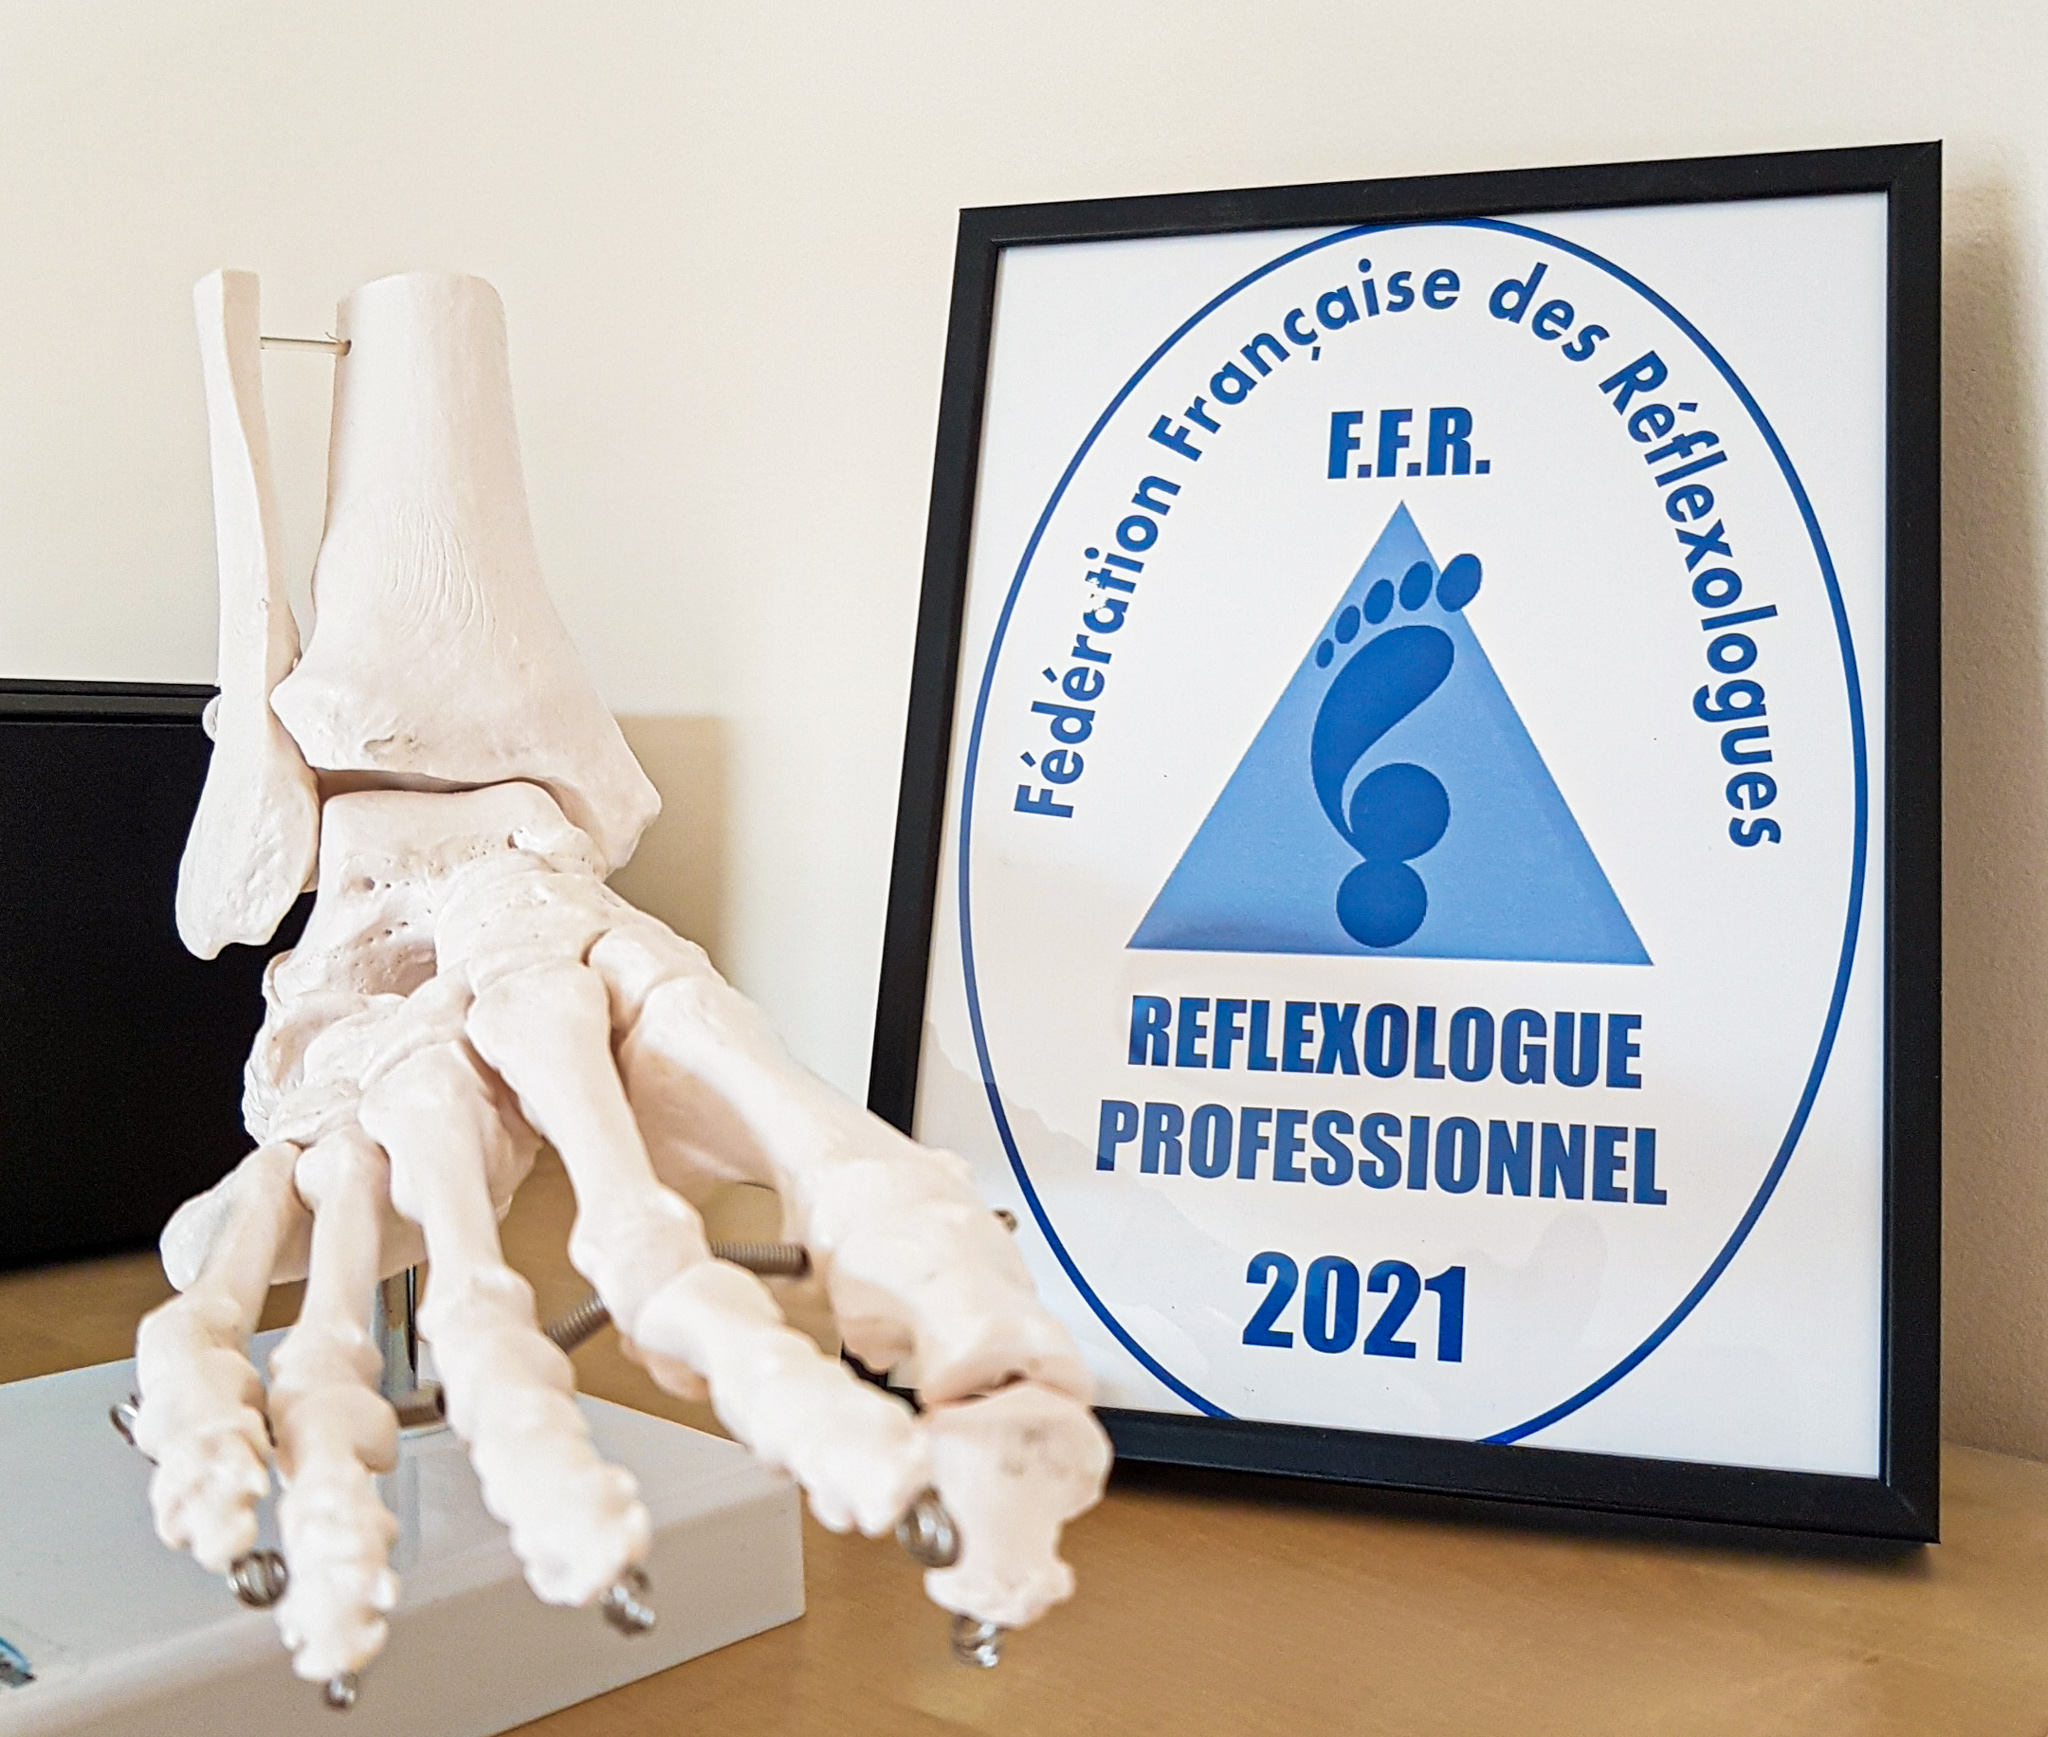 Fédération Française des Réflexologues